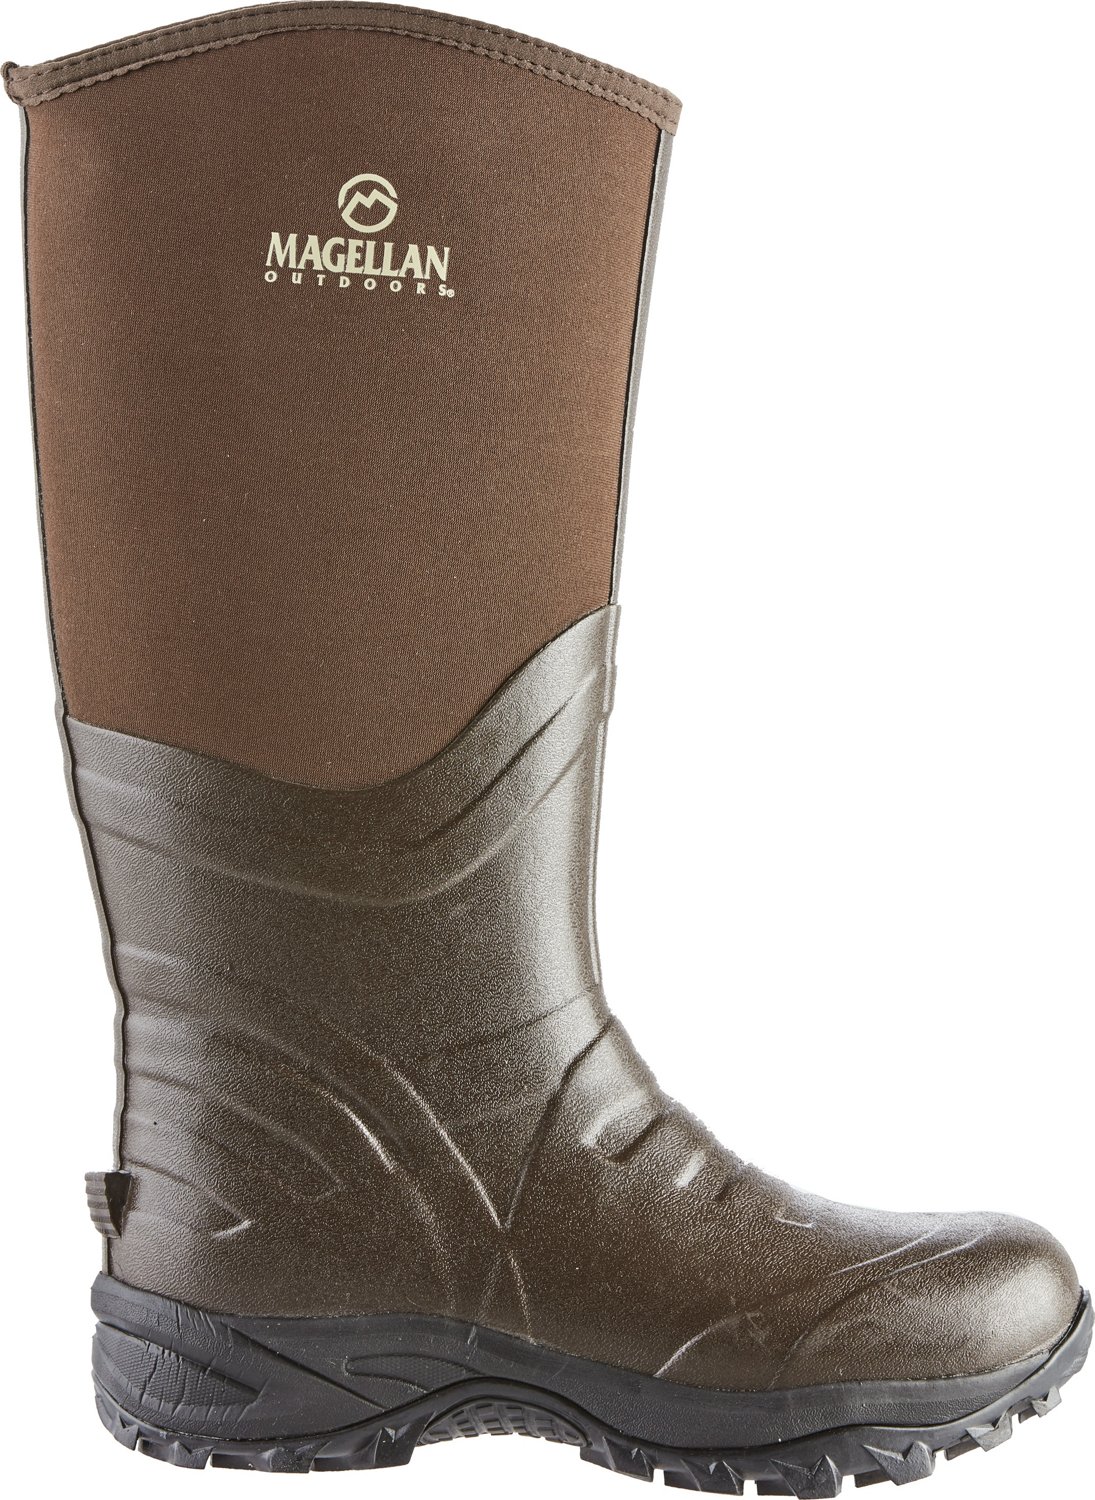 Magellan Outdoors Men's Black Rubber Deck Boots